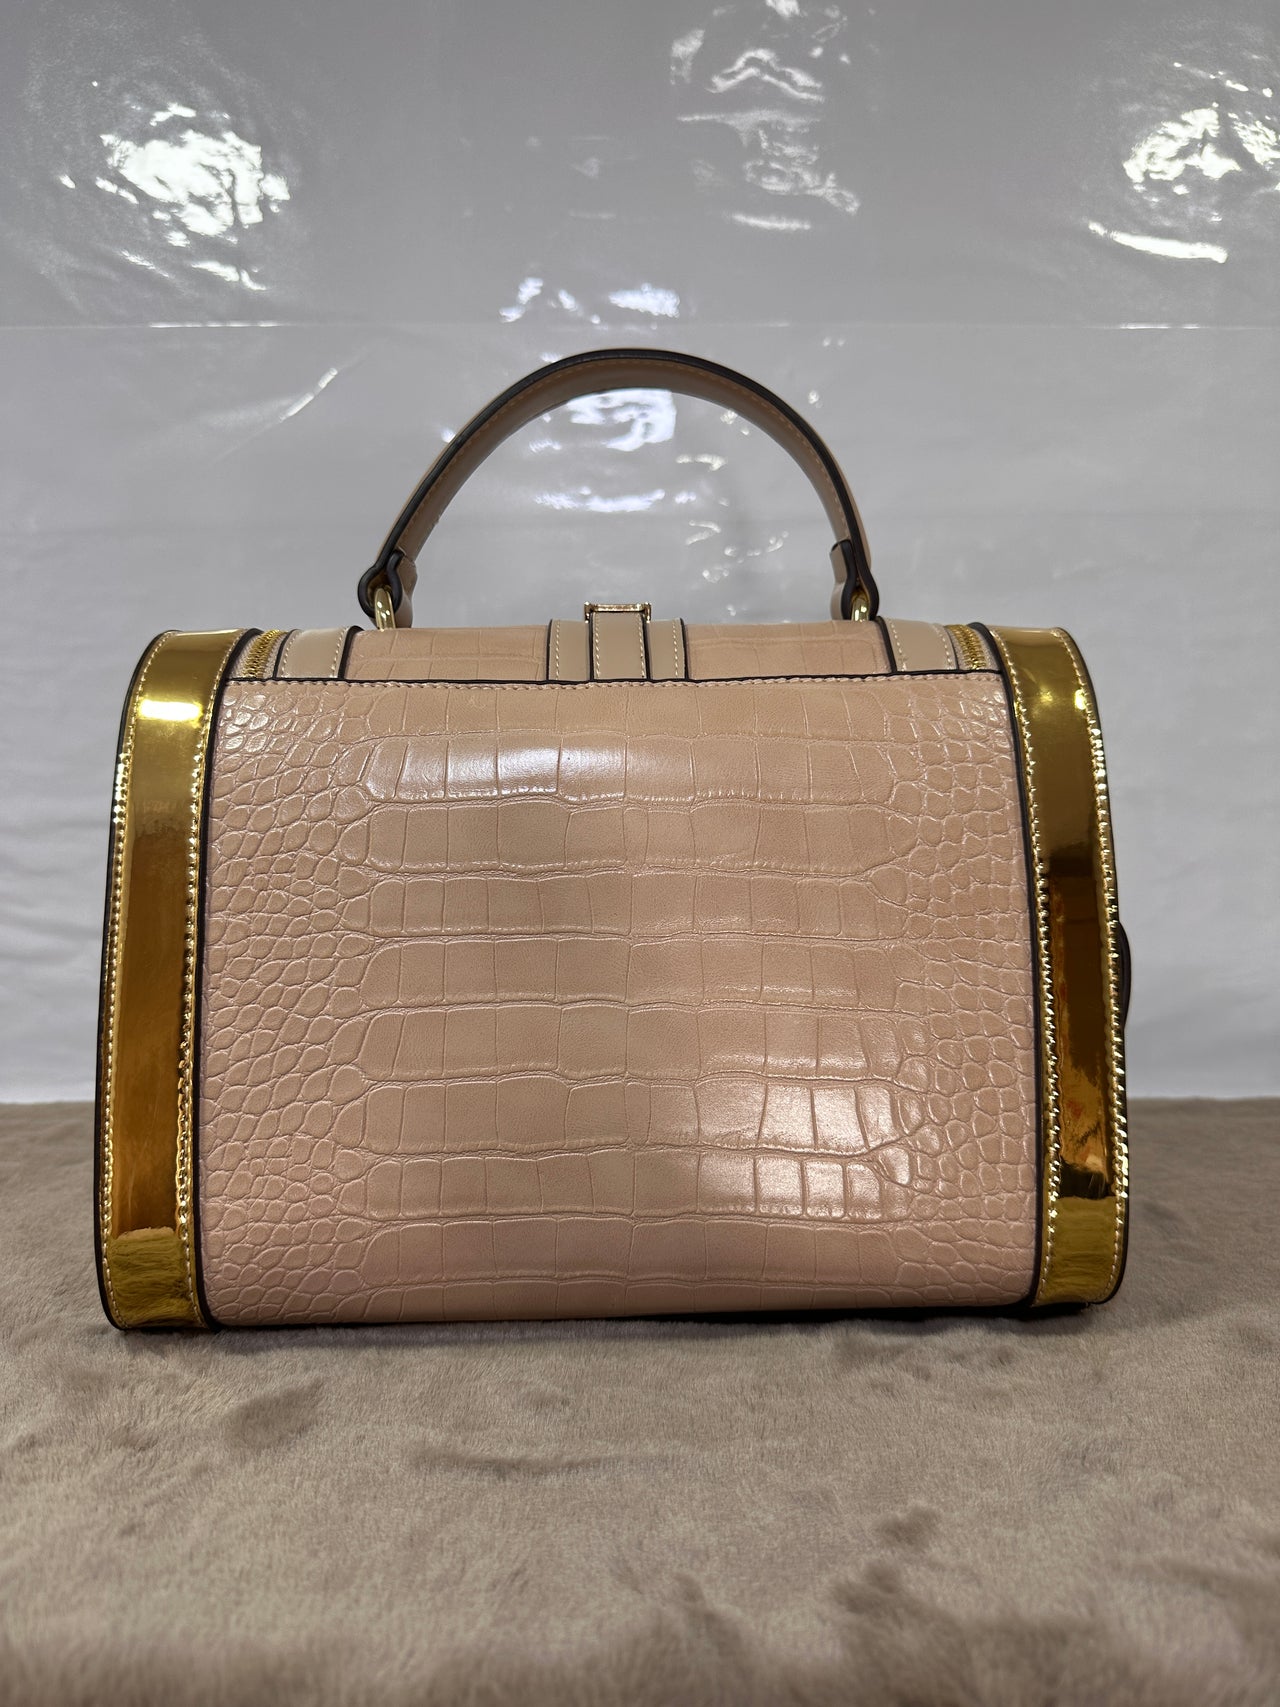 Fermoza Celia Handbag: Elegance & Style